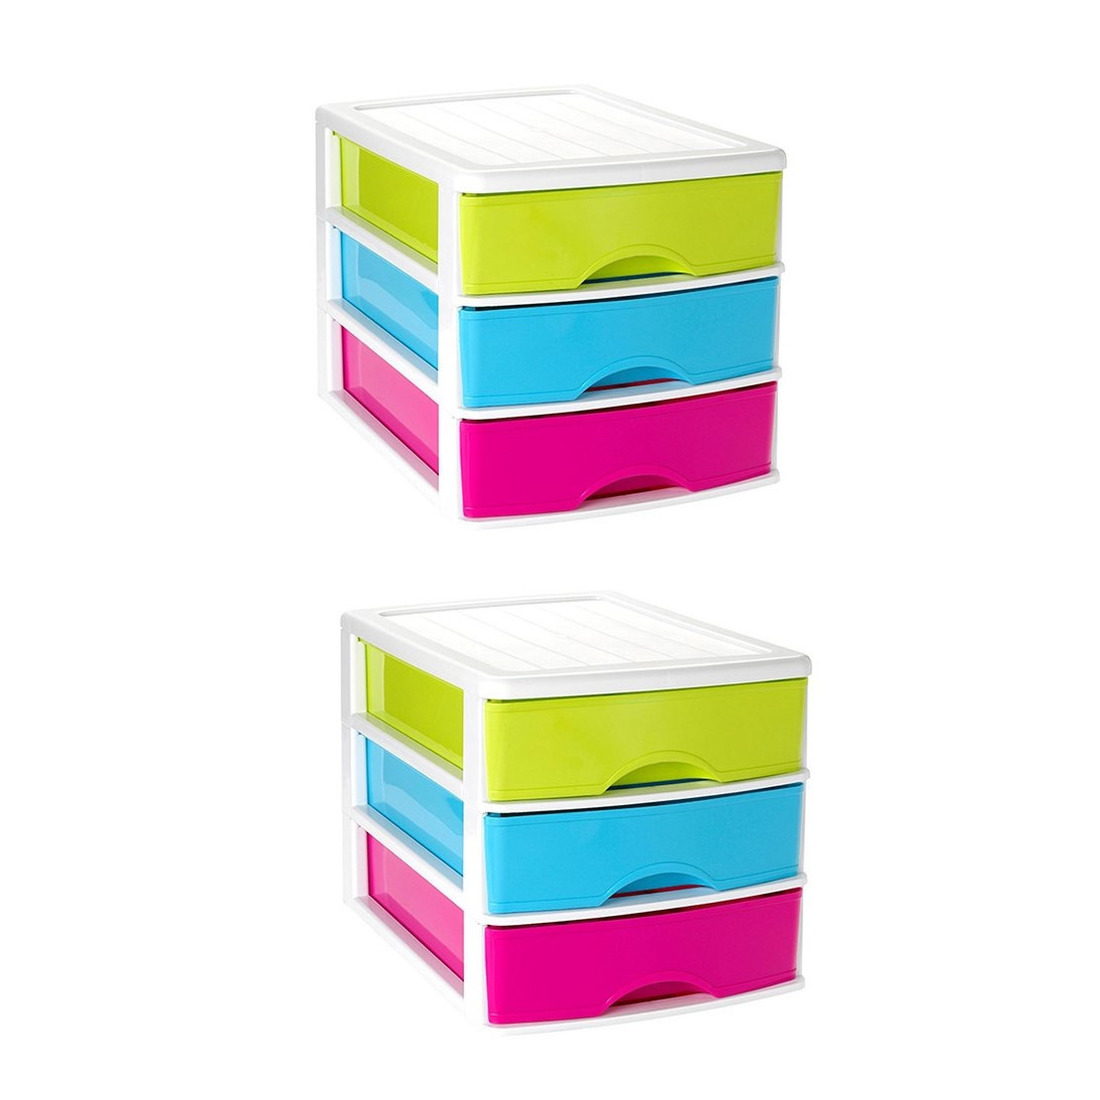 2x stuks ladeblok-bureau organizer met 3 lades multi-color-wit L 35,5 x B 27 x H 26 cm